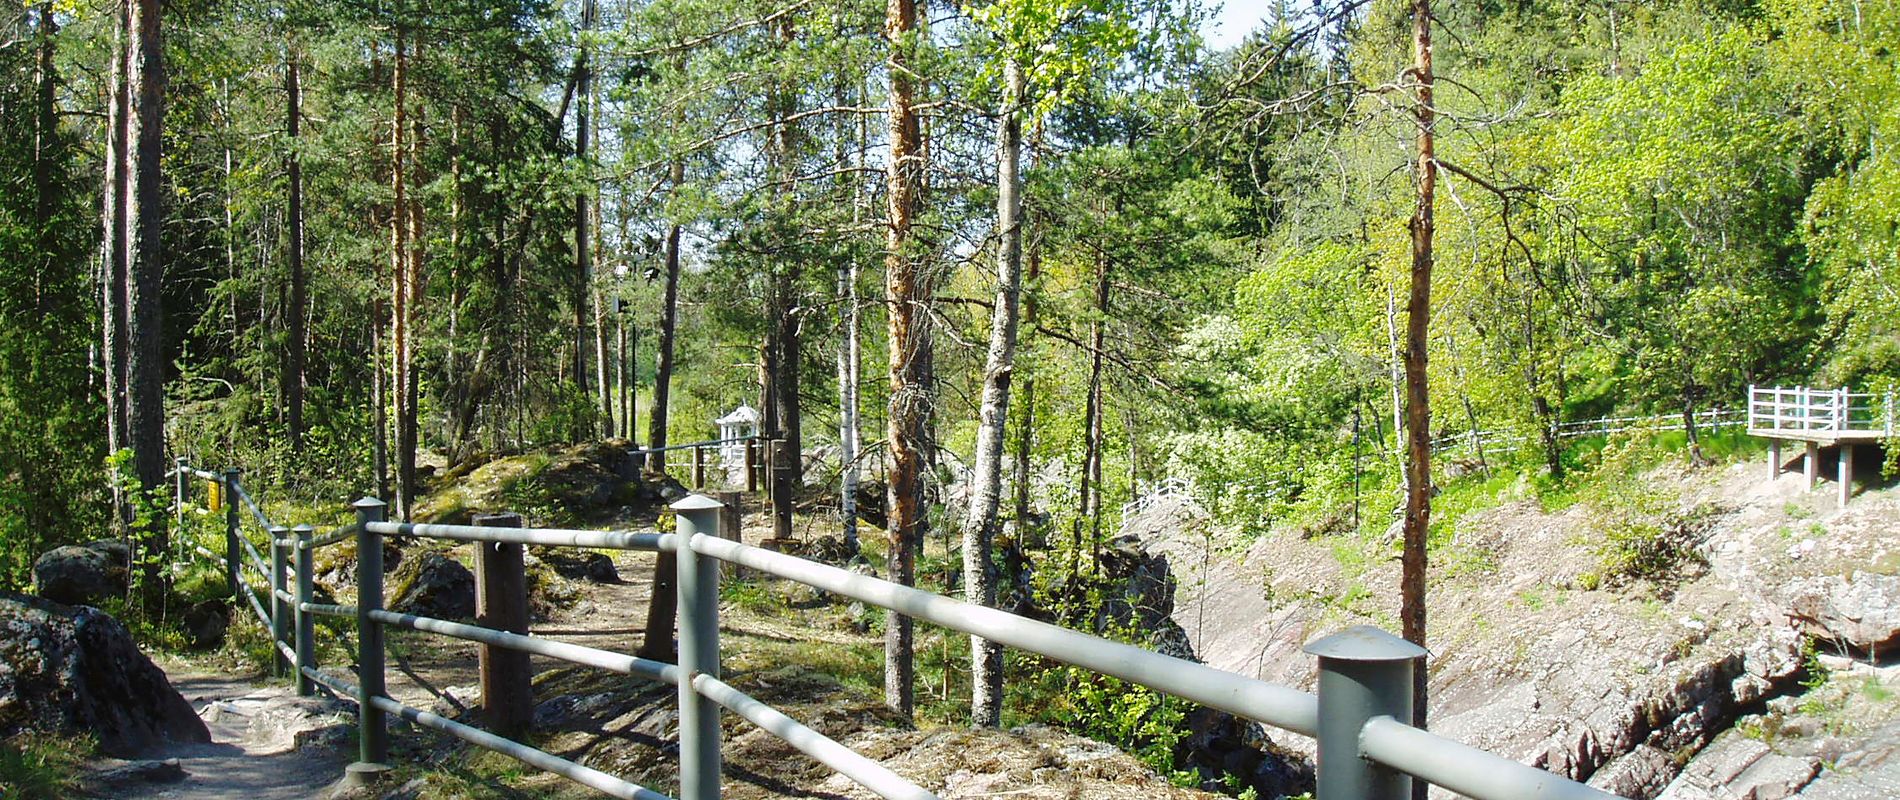 Kruununpuisto on Suomen ensimmäinen luonnonsuojelualue. Sieltä löytyy muun muassa tuhansia vuosia vanhoja hiidenkirnuja, joista suurimpiin mahtuu aikuinen seisomaan. Puisto ei ole iso, joten sen jaksaa kiertää huonojalkainenkin. © Imatrakuvat.fi